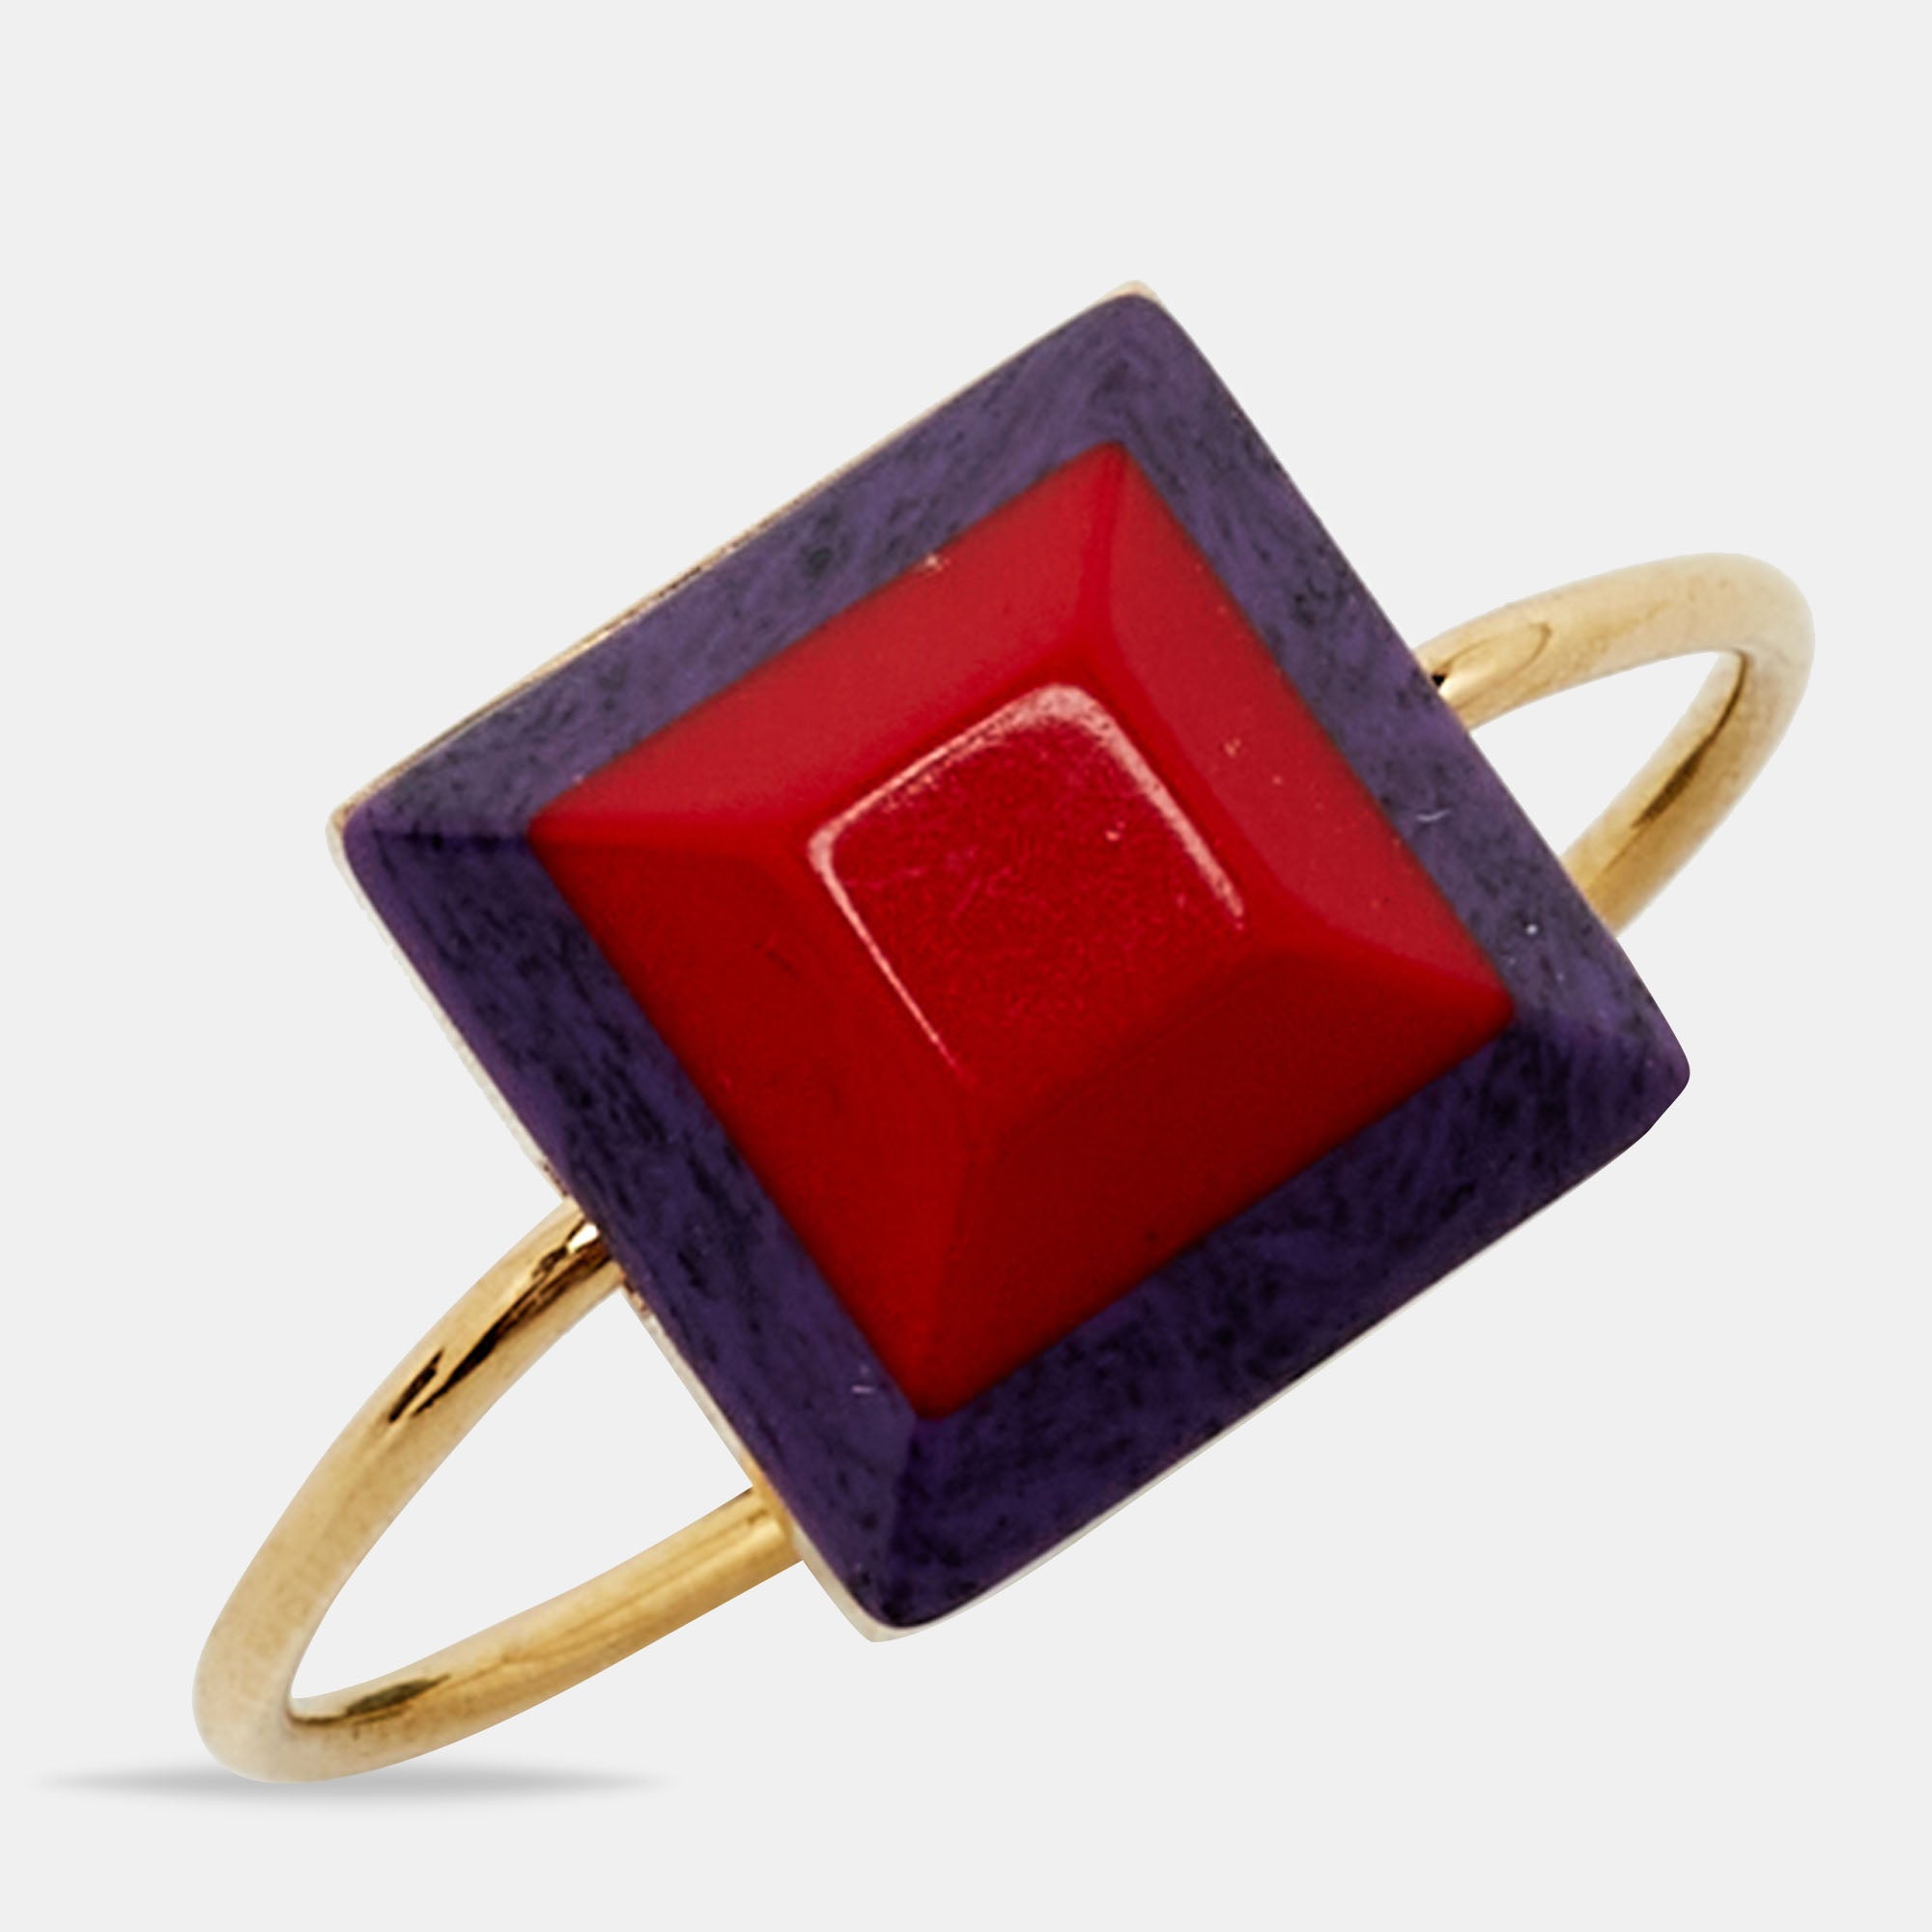 FENDI Resin Gold Tone Ring Size 52 – Kilta Bags